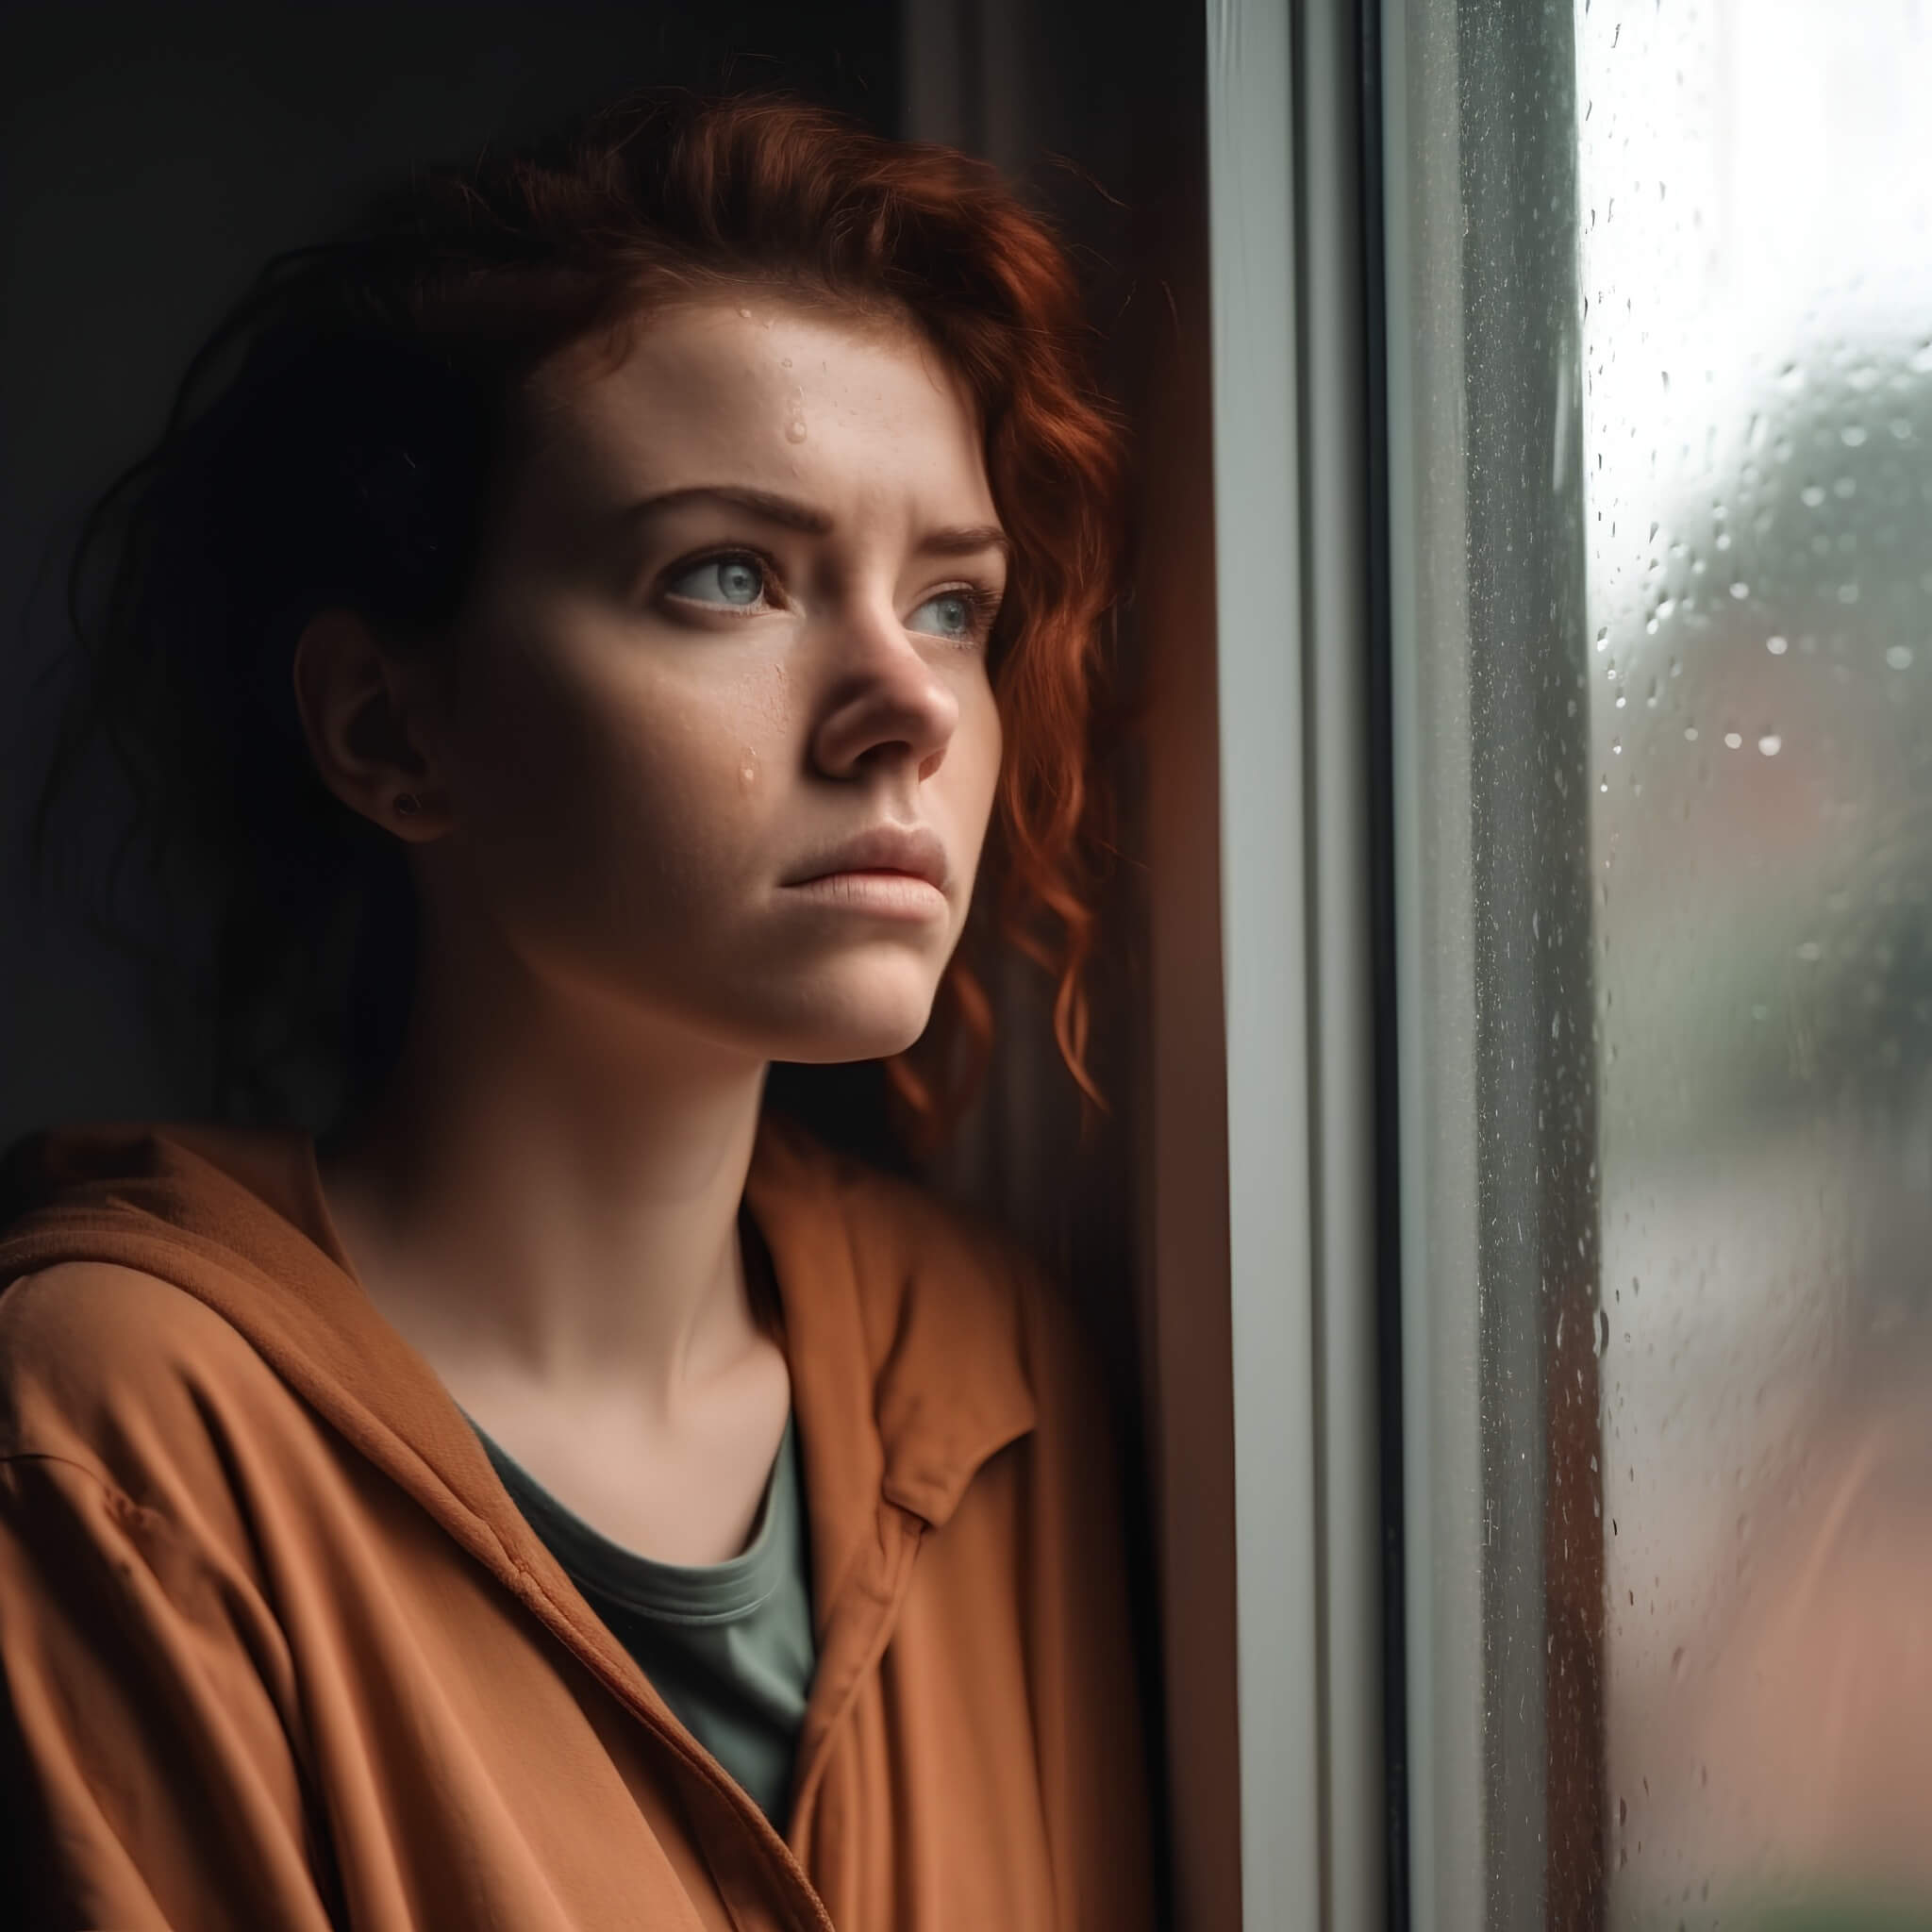 woman in depressive funk by the window